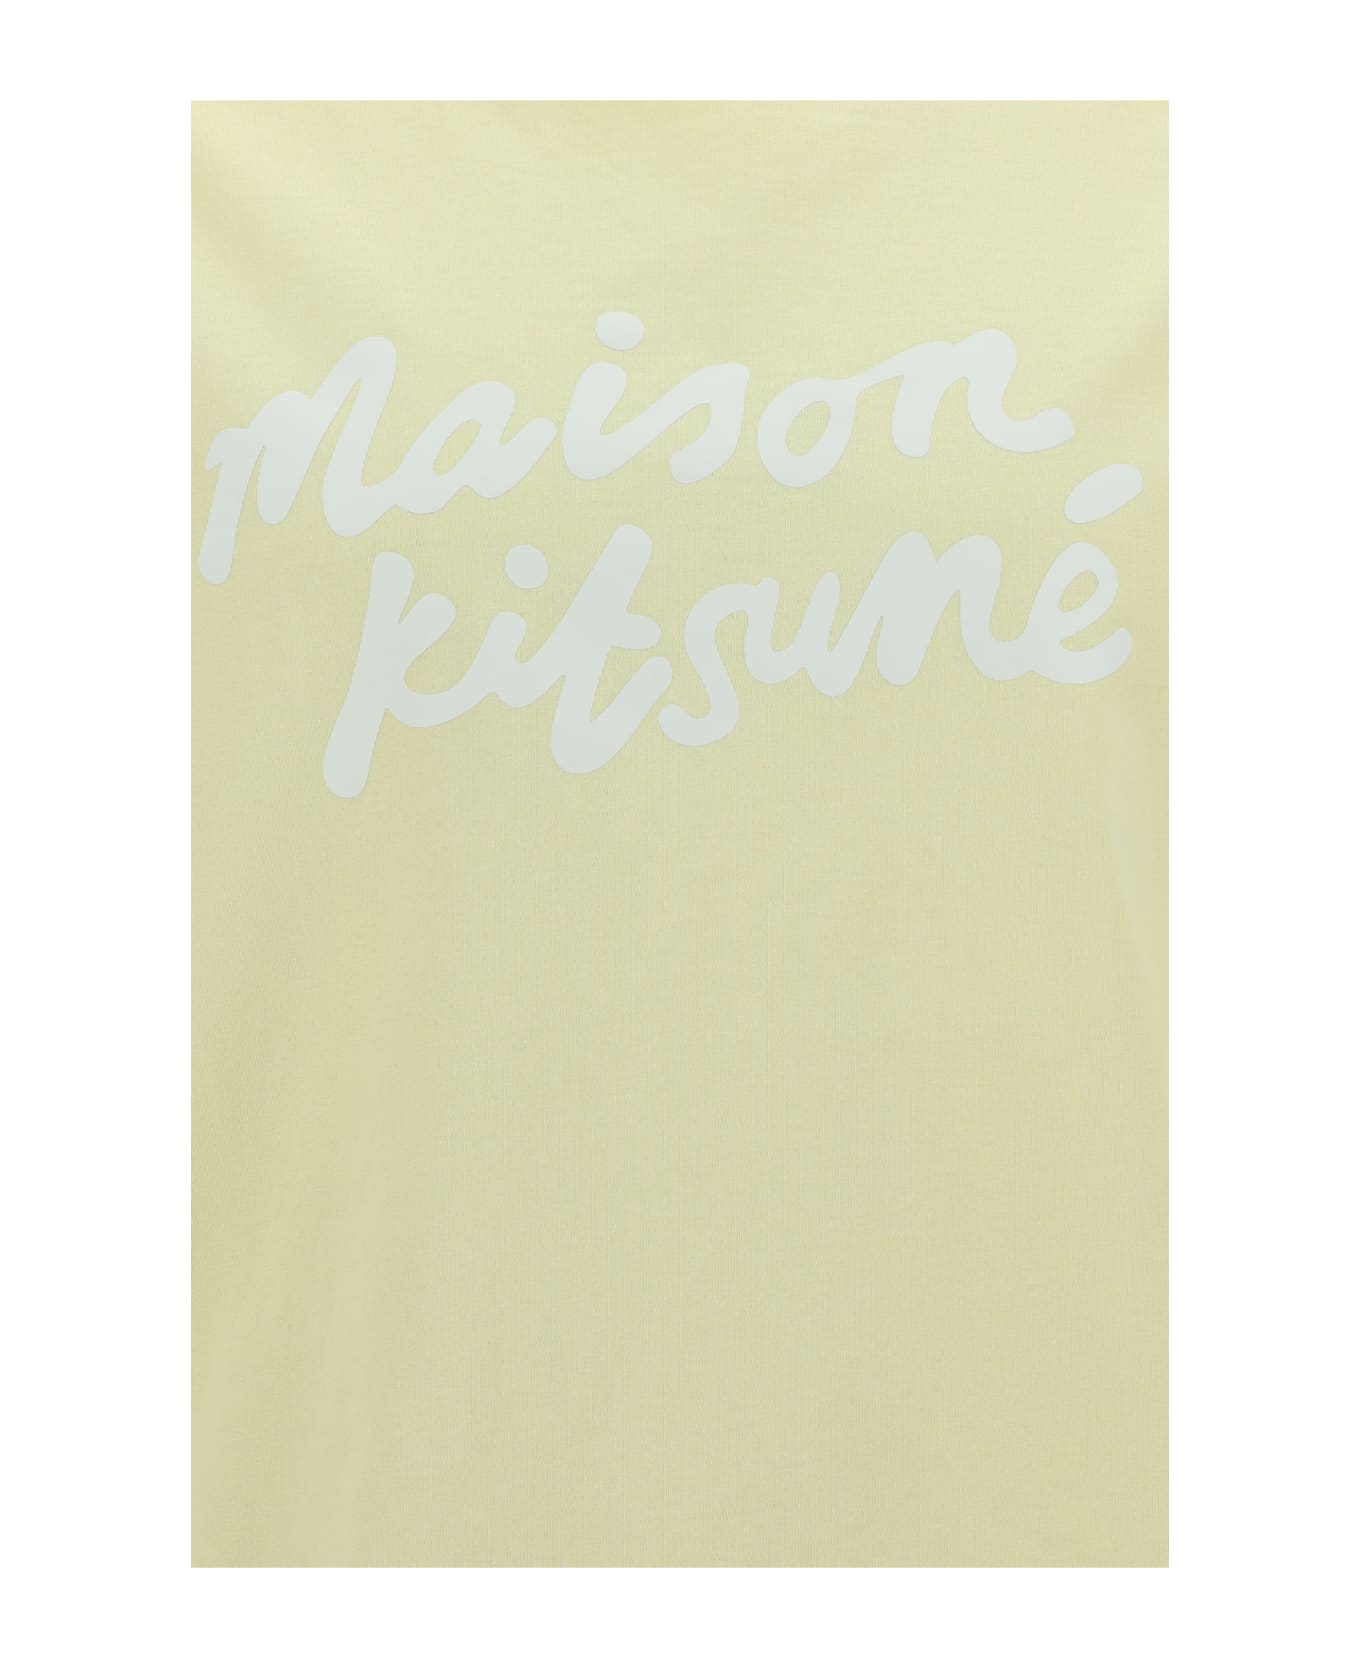 Maison Kitsuné T-shirt - Chalk Yellow シャツ